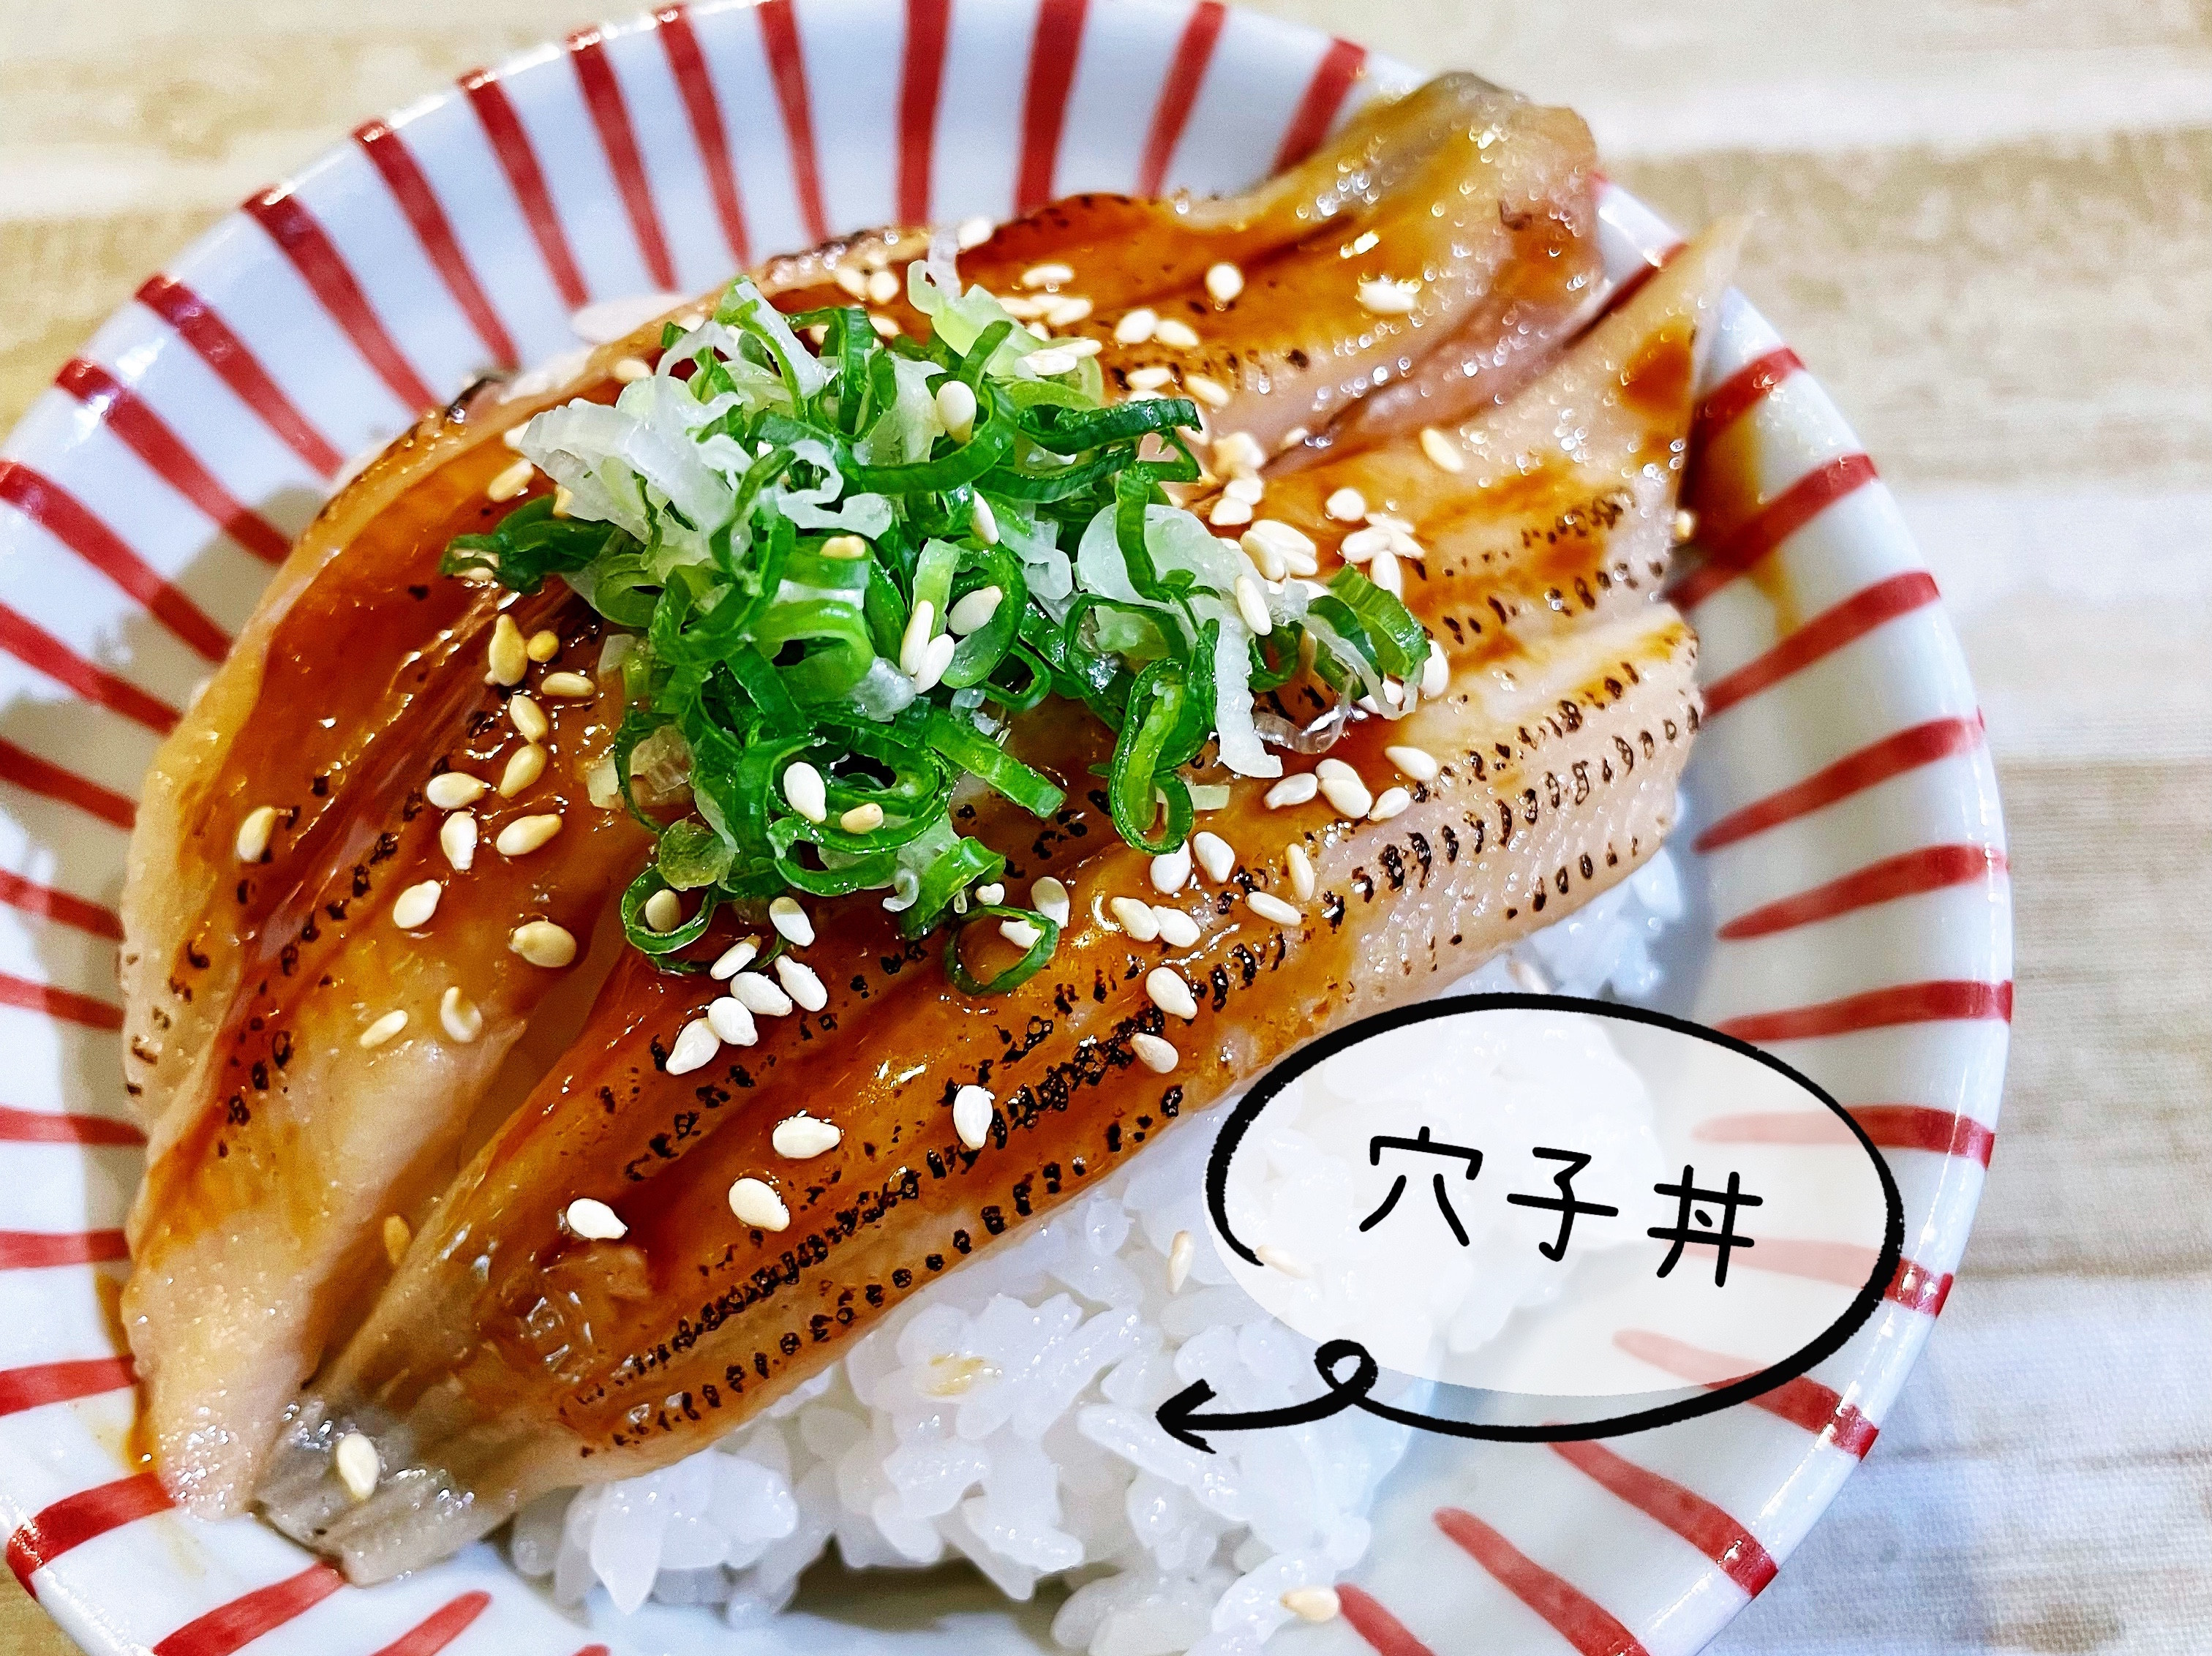 穴子丼by Hisushi 海將の美食 愛料理